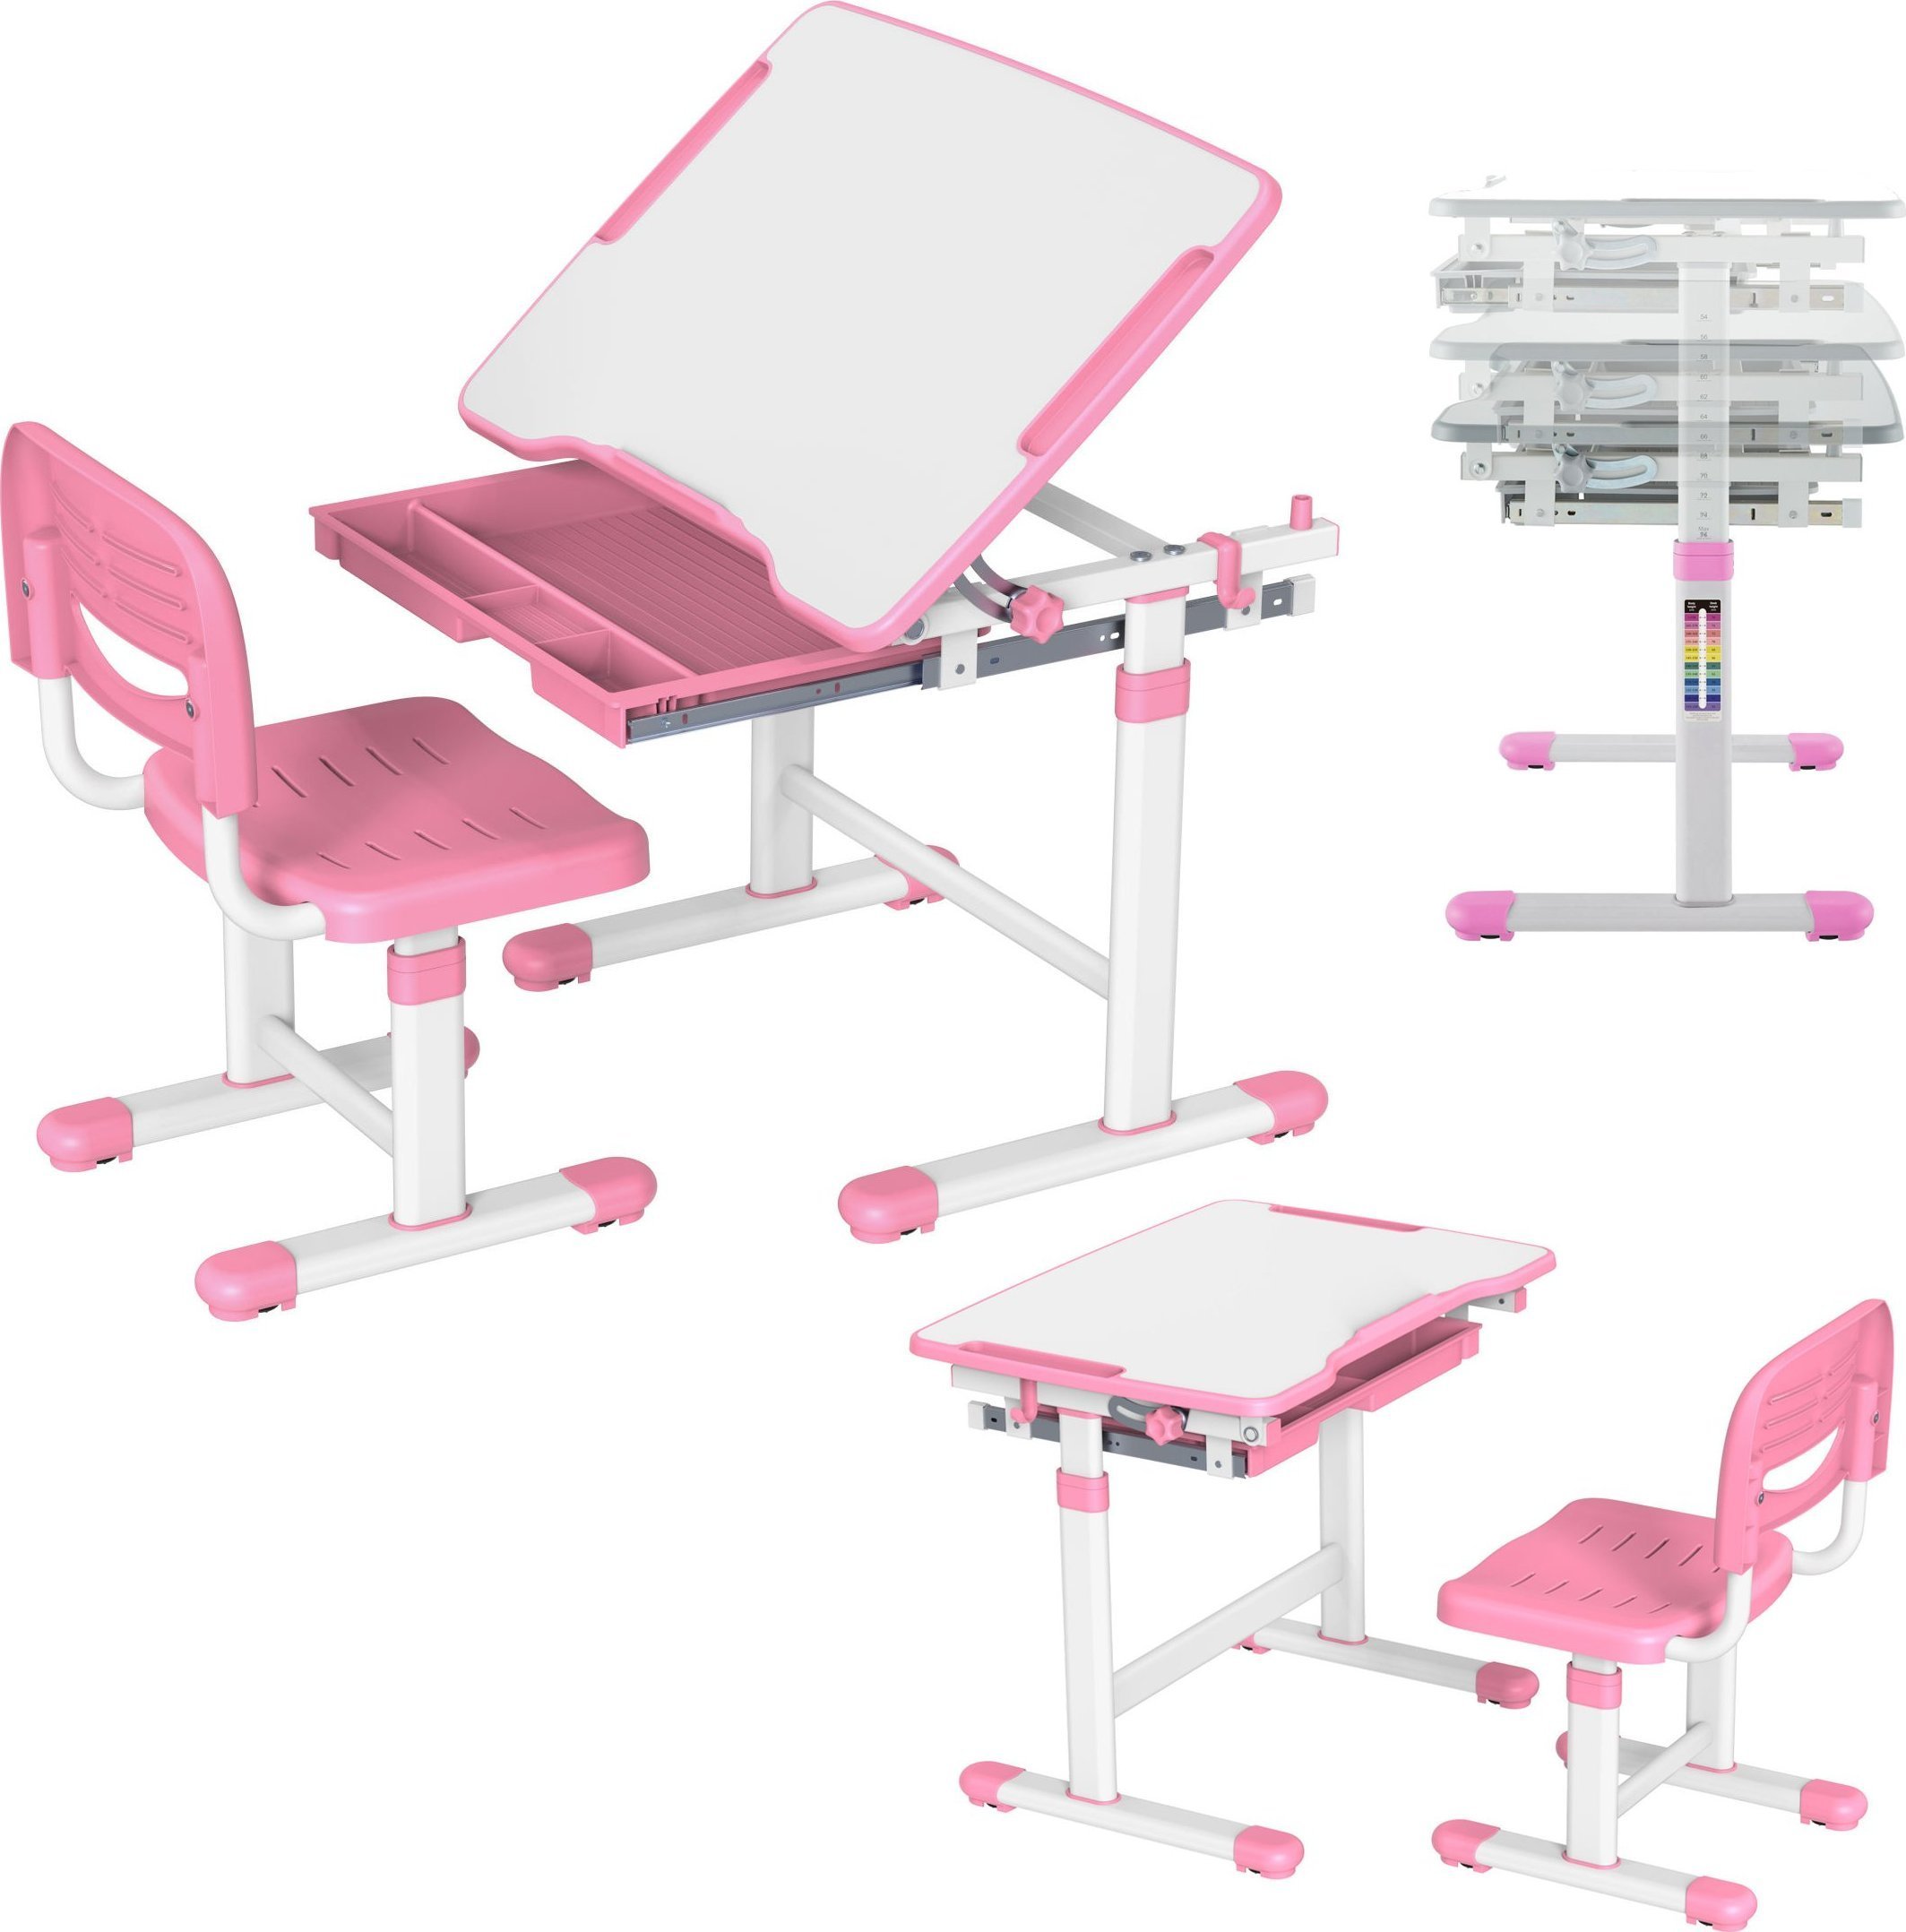 Mozos MOZOS DC-SET-PINK birou pentru copii si scaun reglabil pentru copii 2-12 ani